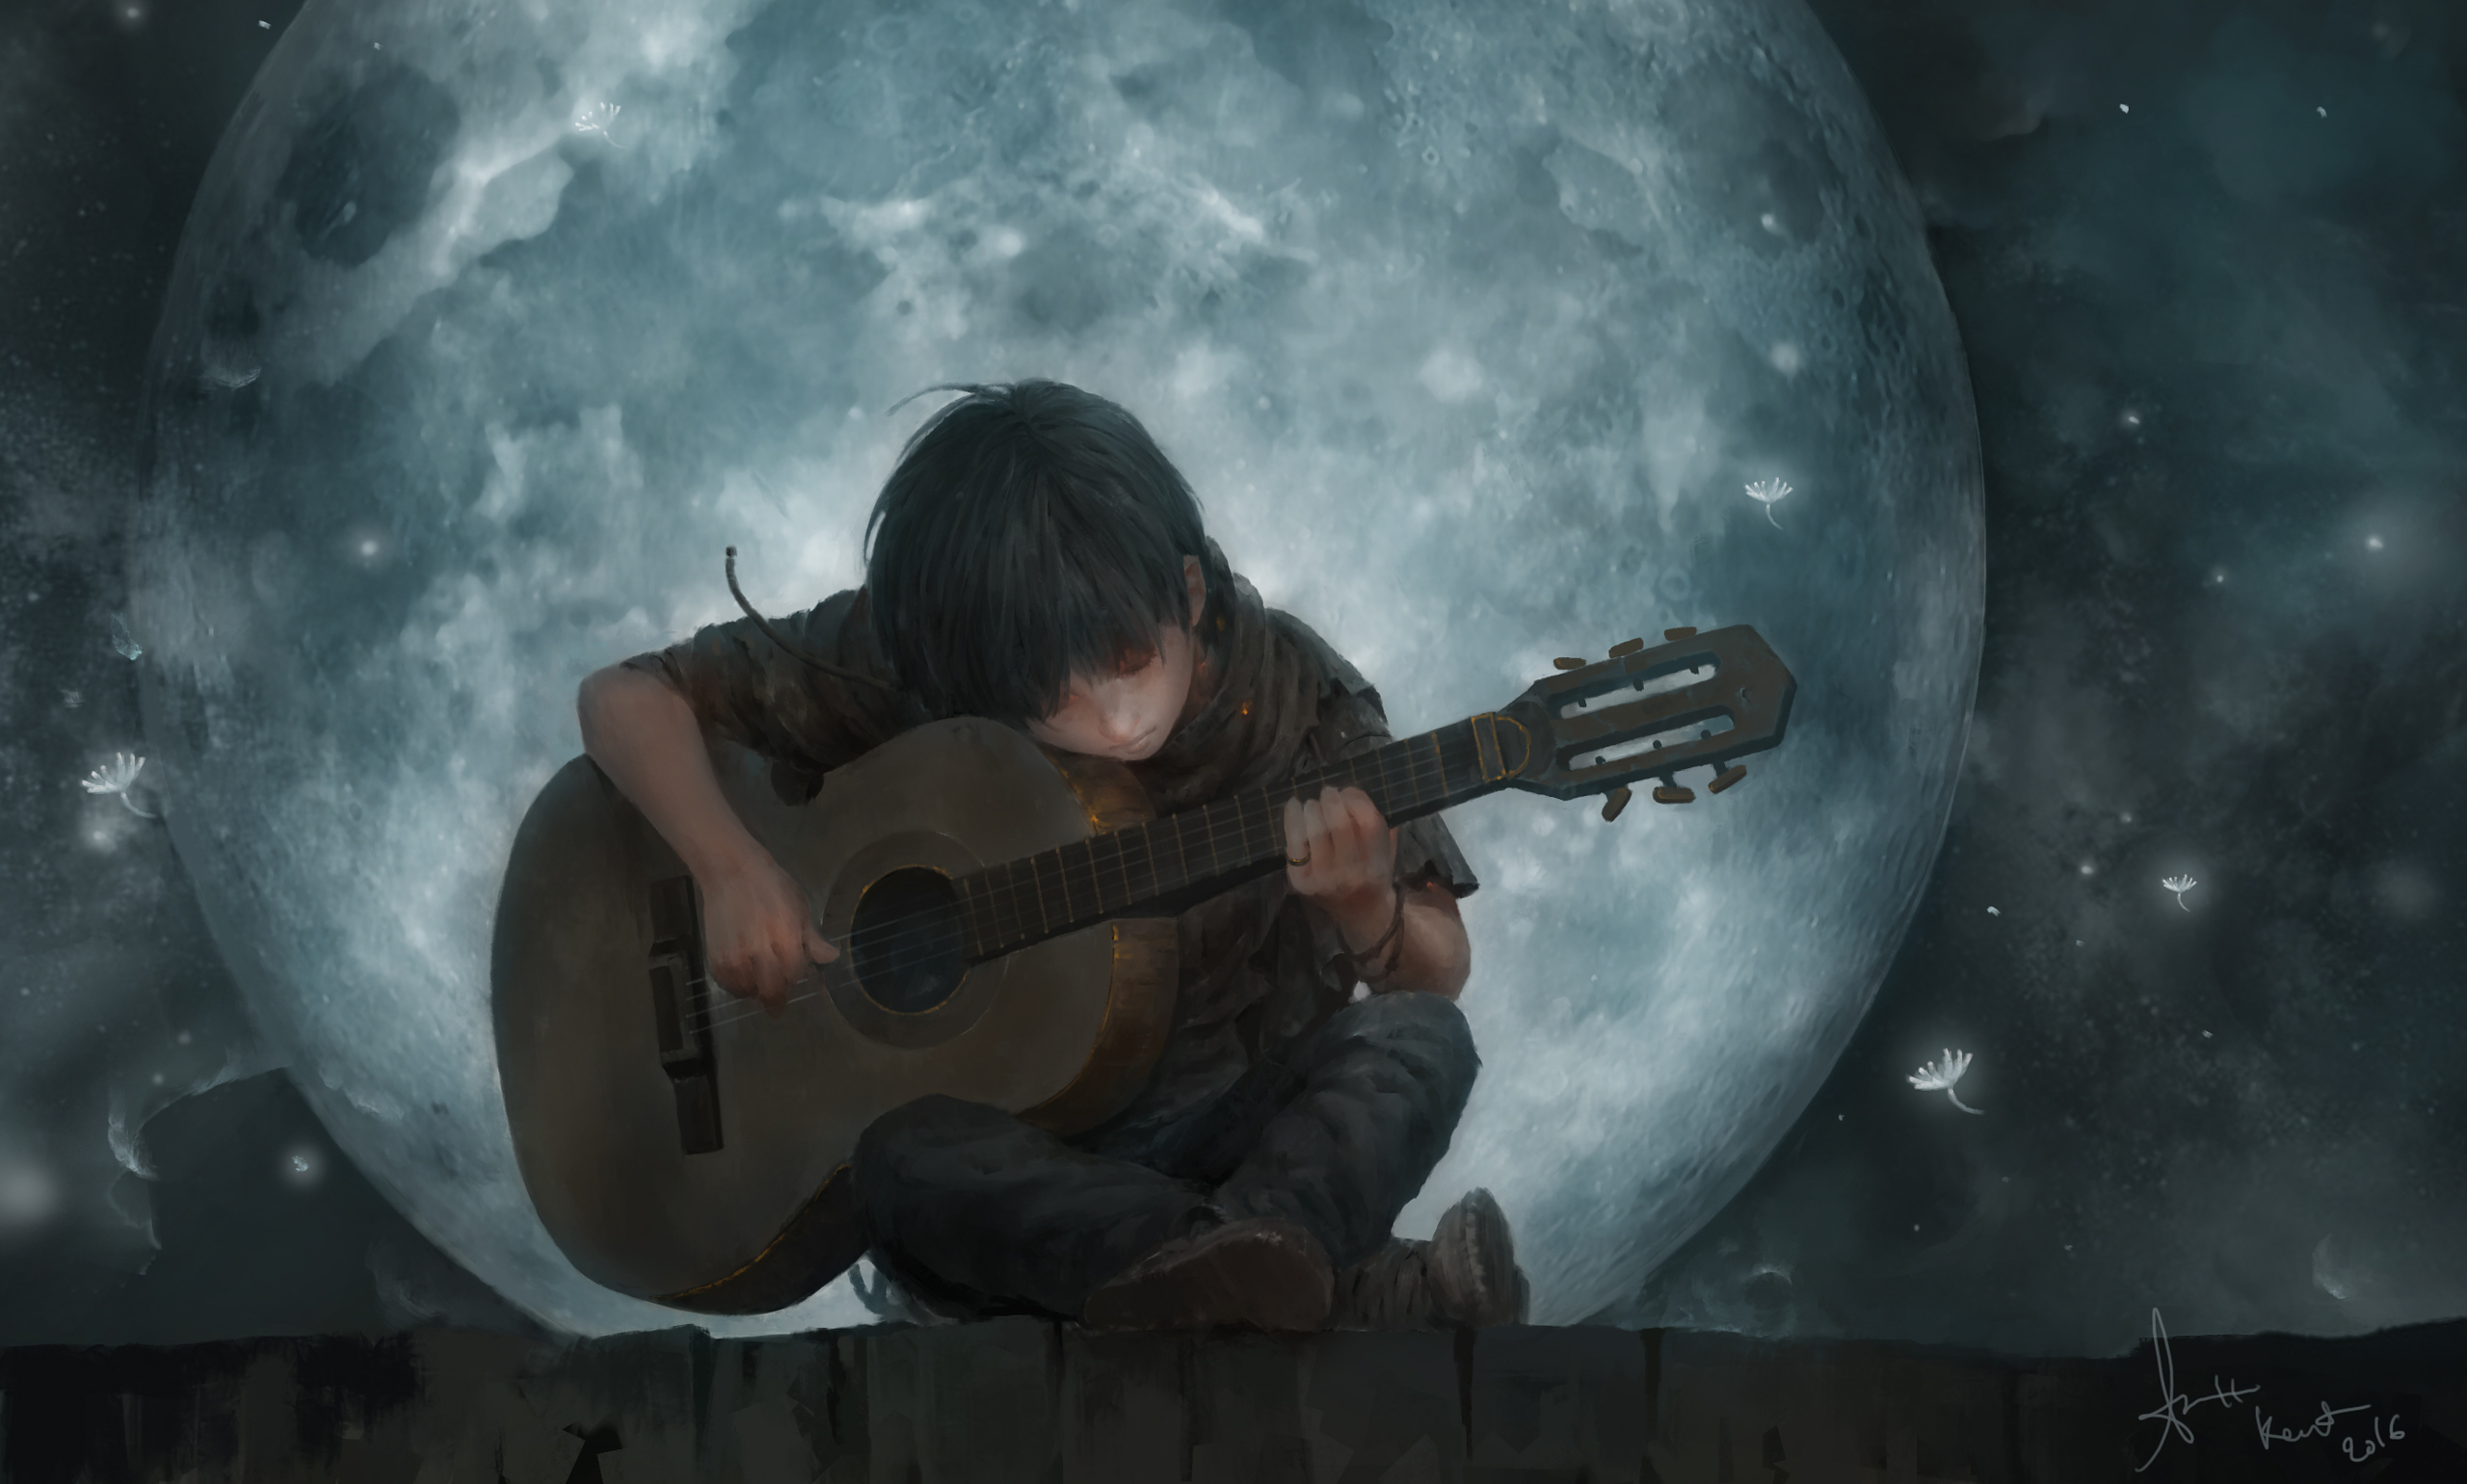 Descarga gratuita de fondo de pantalla para móvil de Luna, Guitarra, Niño, Artístico.